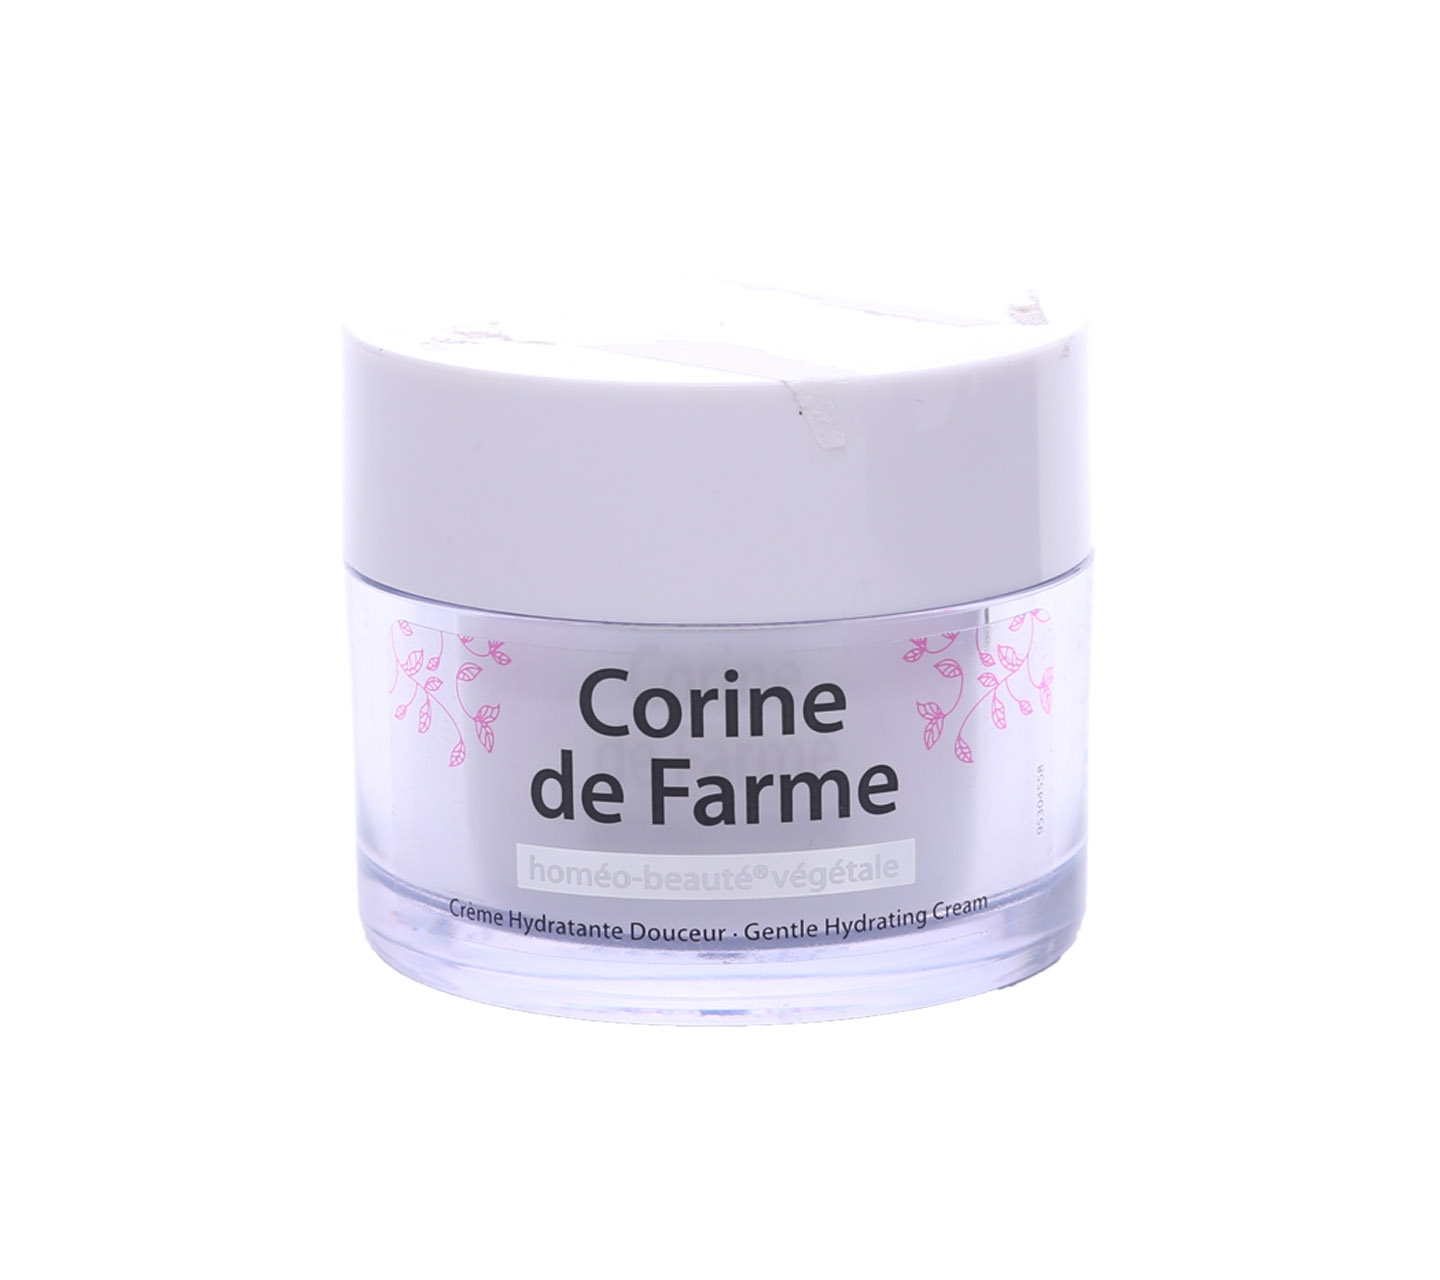 Corine De Farme Creme Hydratante Douceur Gentle Hydrating Cream Skin Care